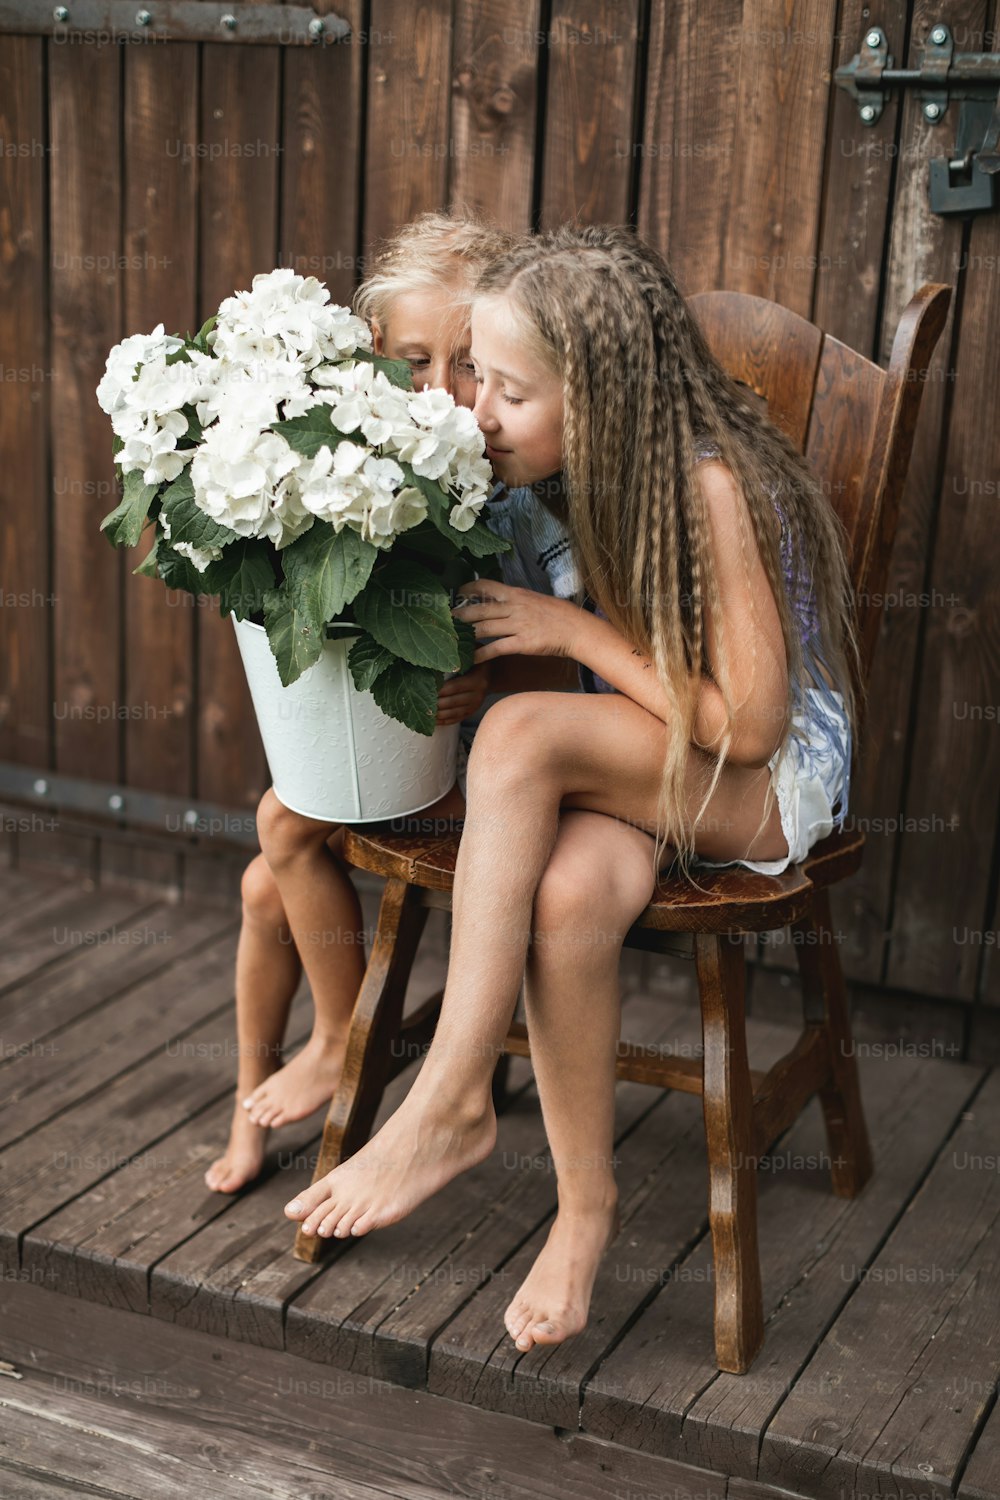 Les enfants et les fleurs, l’été, la campagne et le plaisir. Vacances d’été. Deux jolies petites filles assises sur la chaise devant une grange en bois et sentant les fleurs d’hortensia dans un grand seau blanc.